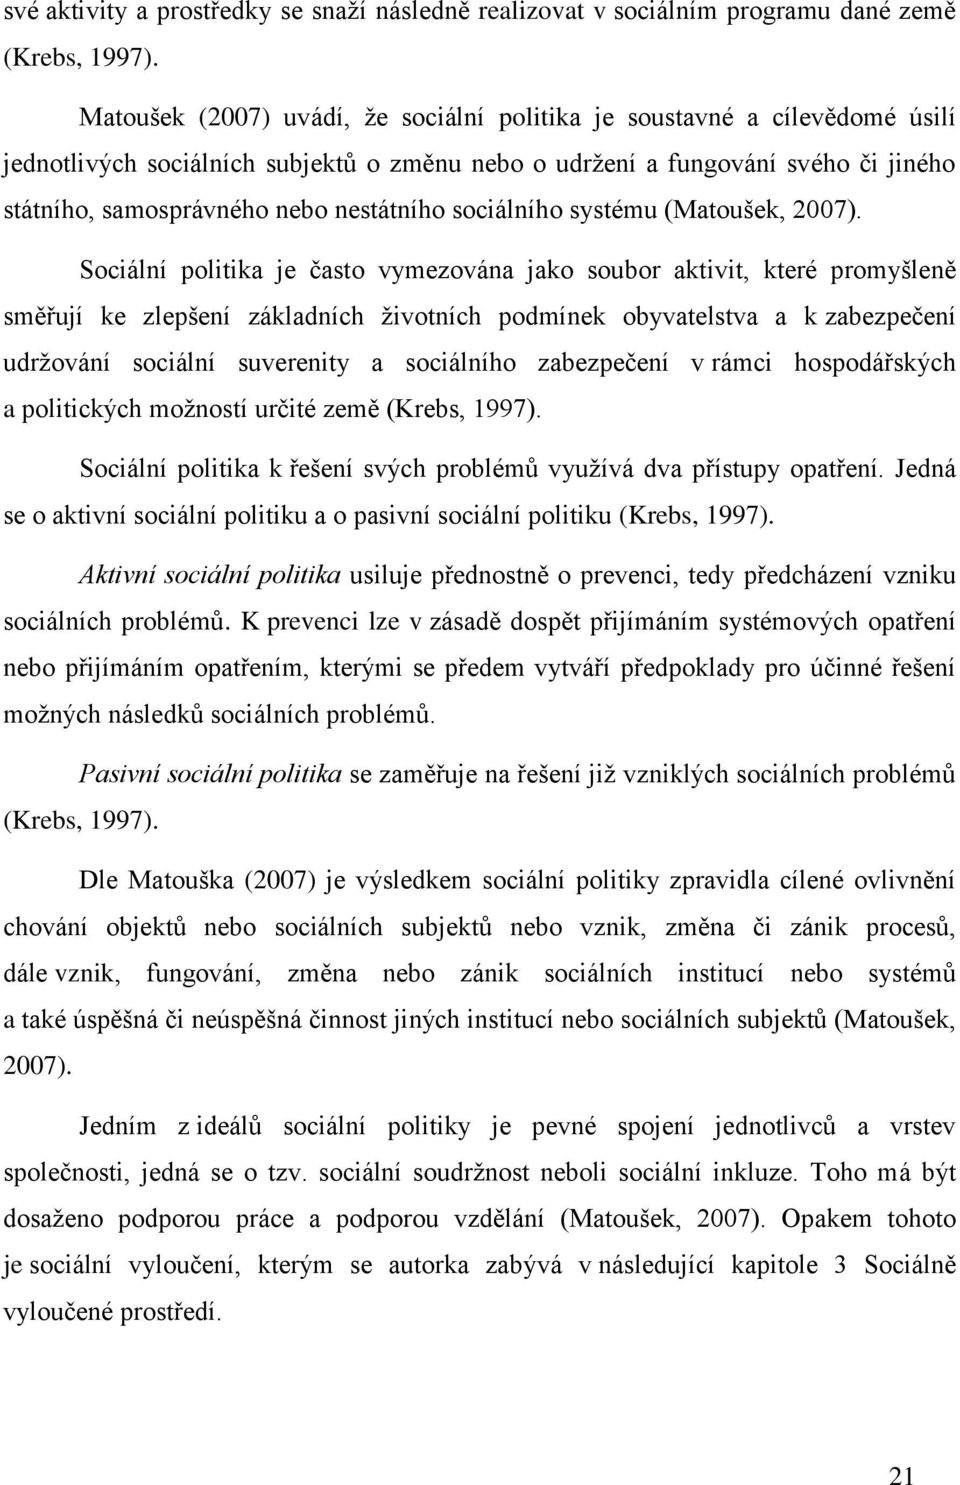 sociálního systému (Matoušek, 2007).